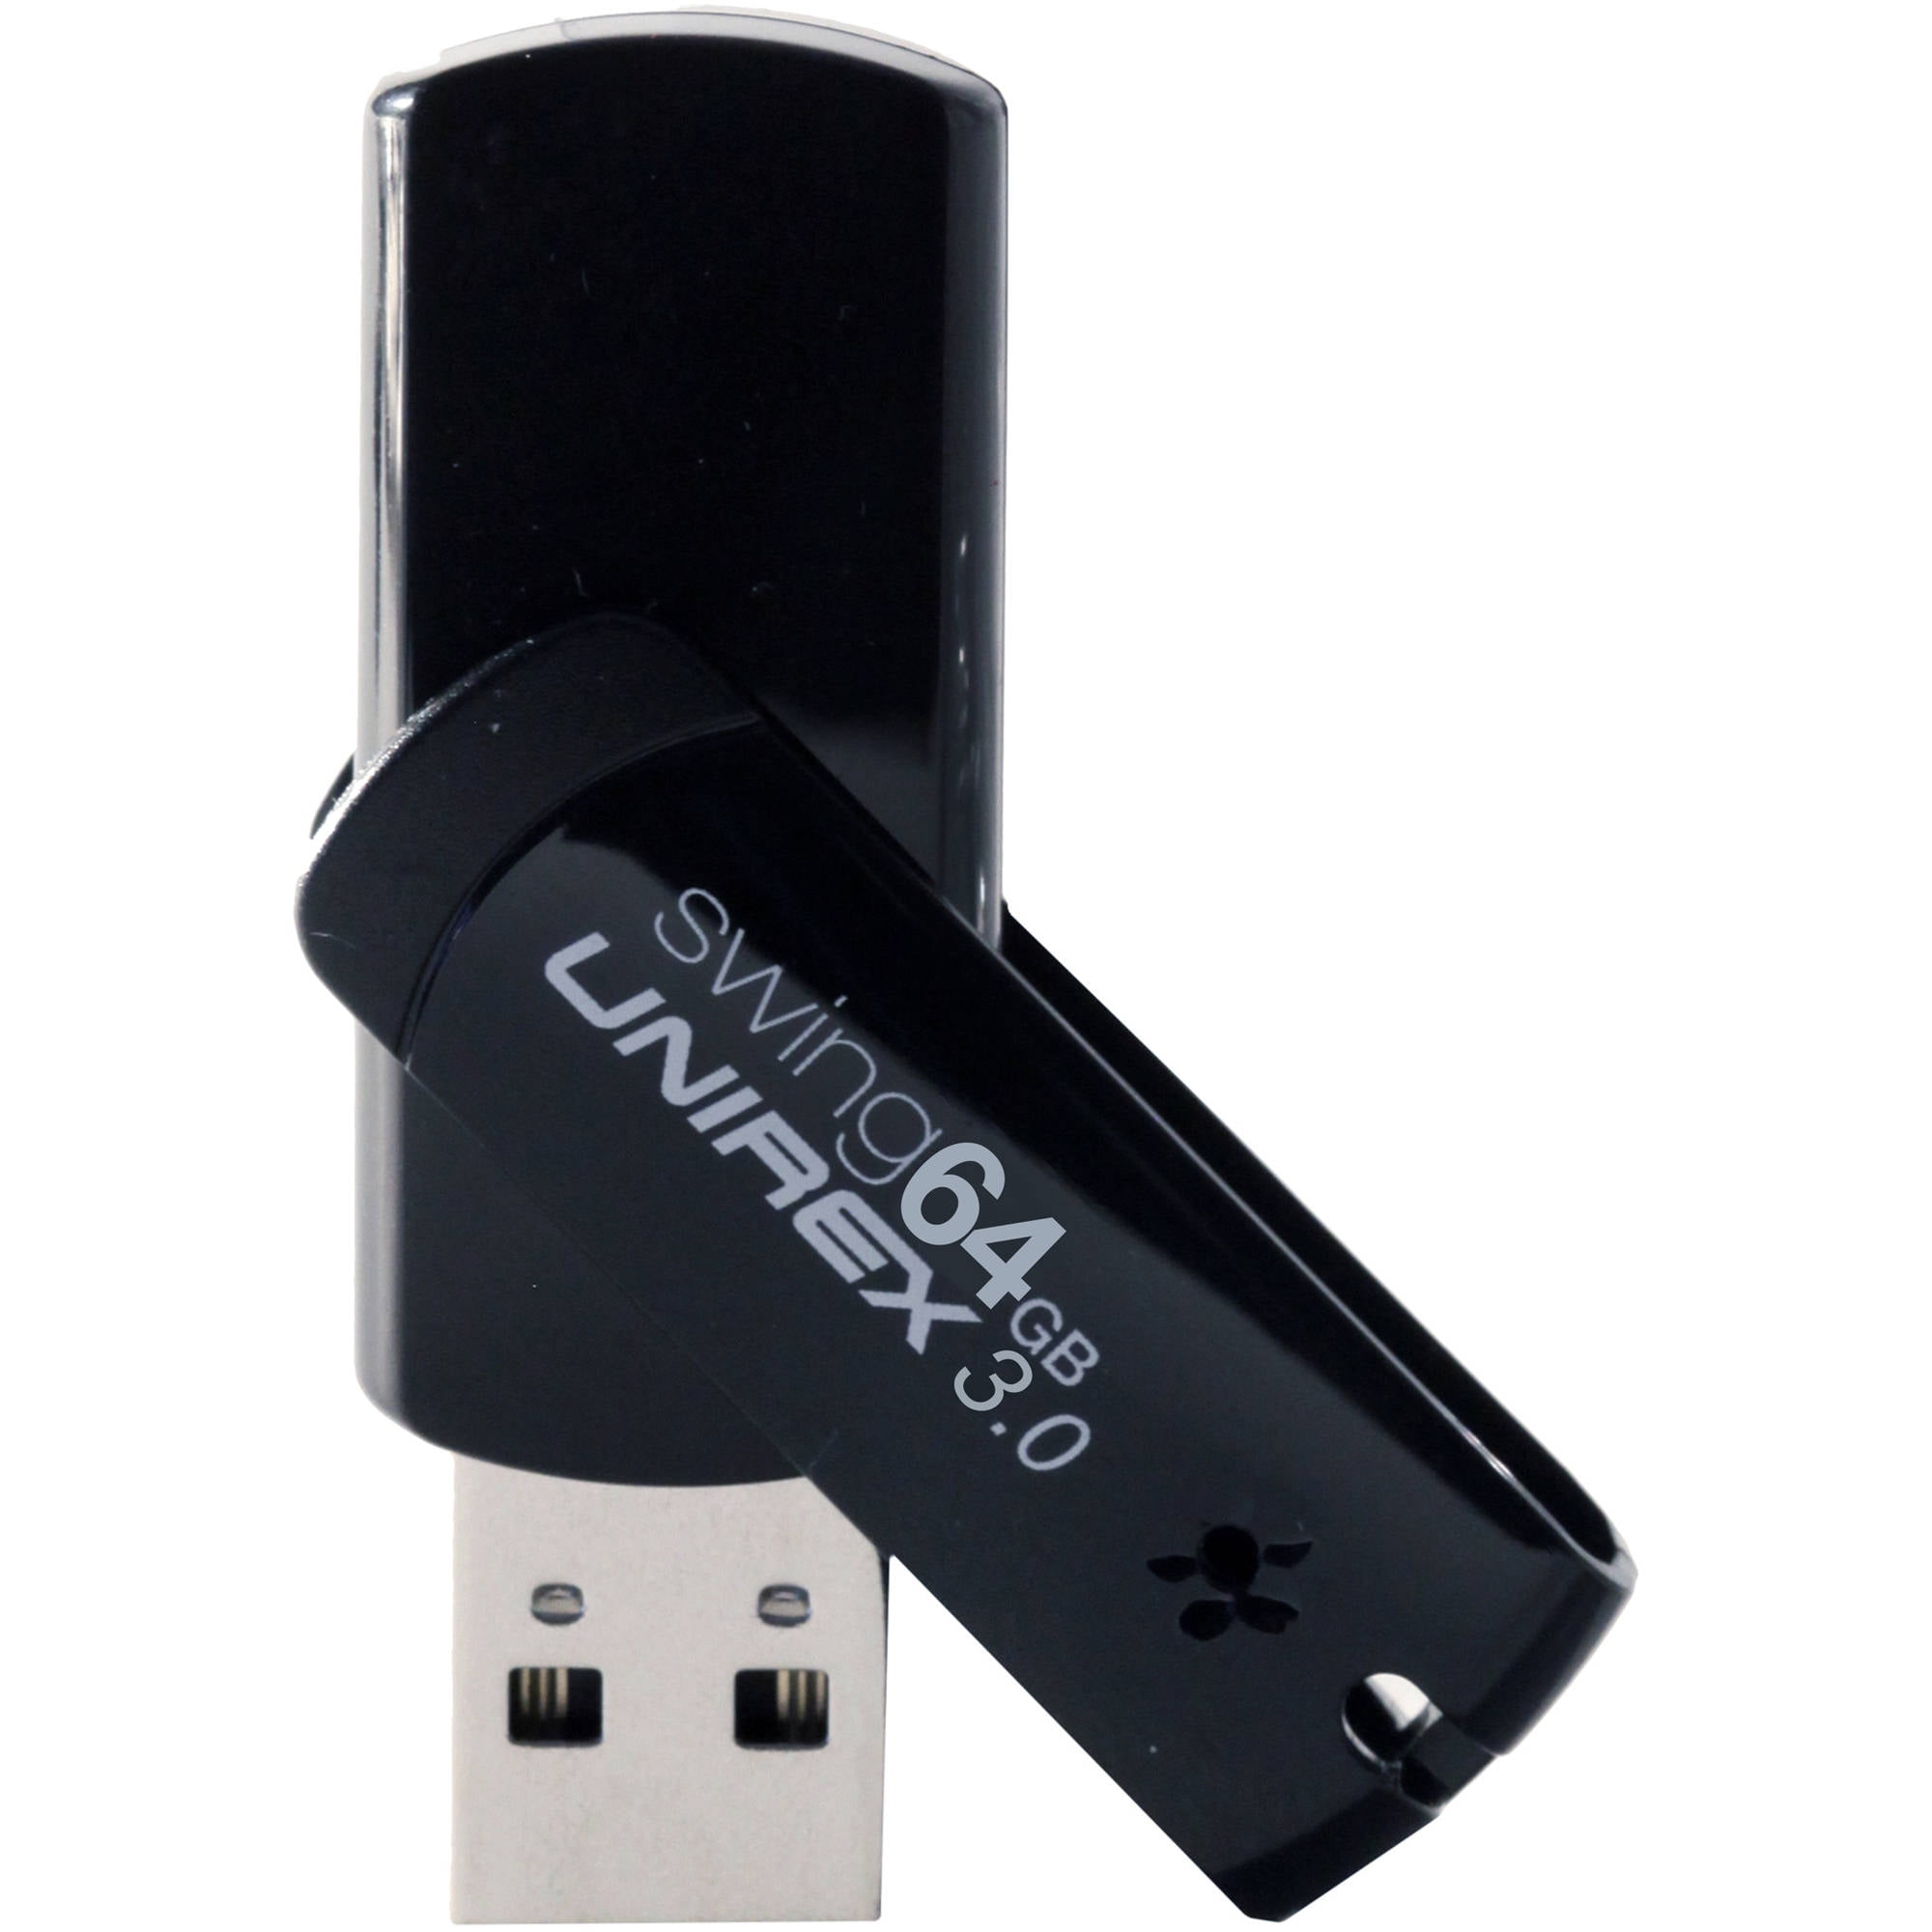 USB 3.0 64GB High Speed Flash Drive  Walmart.com  Walmart.com